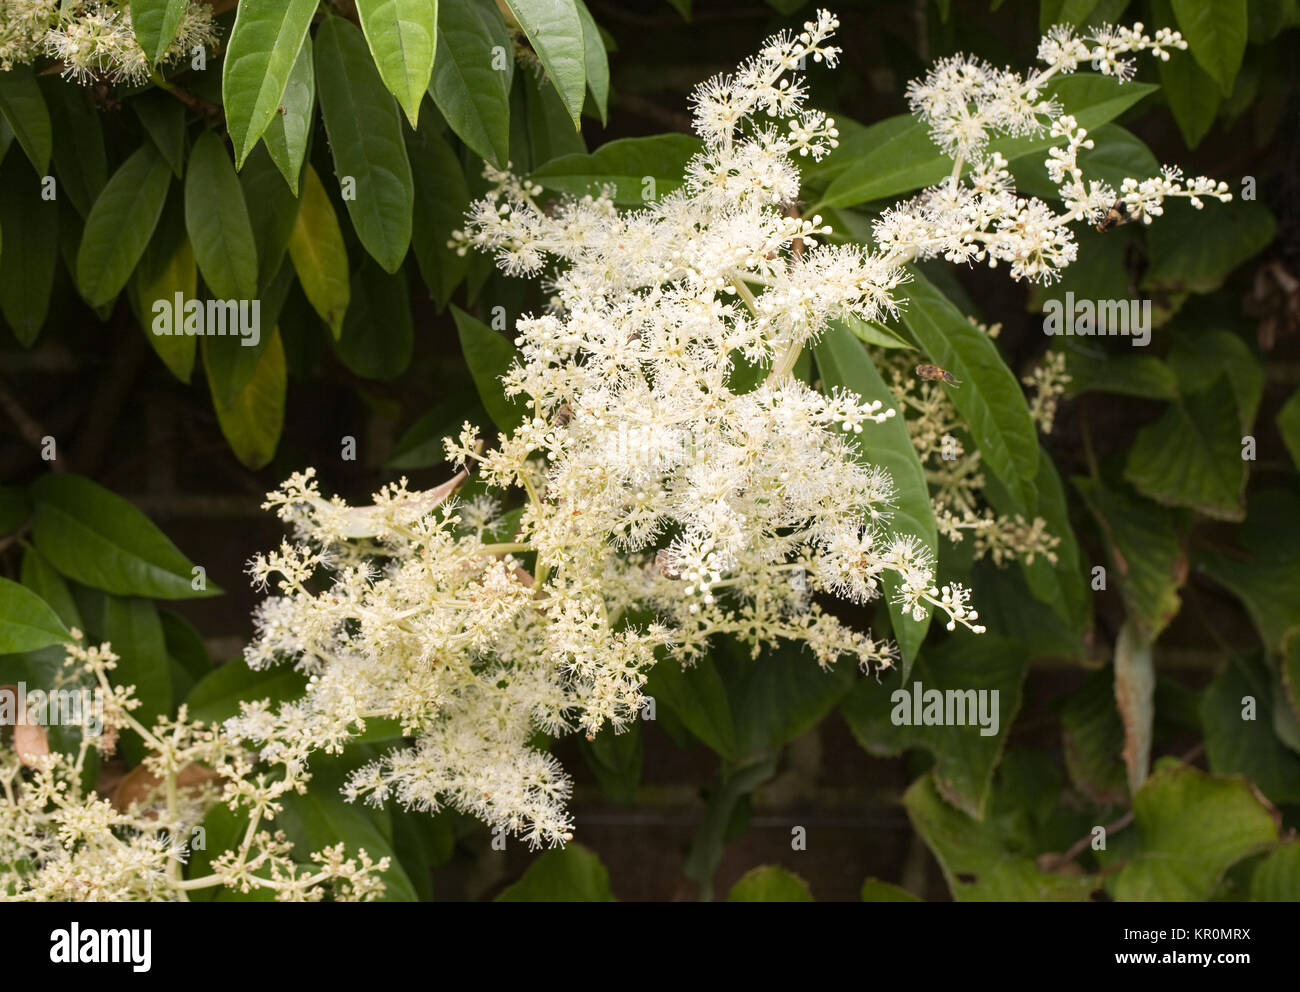 Pileostegia viburnoides flowers. Stock Photo